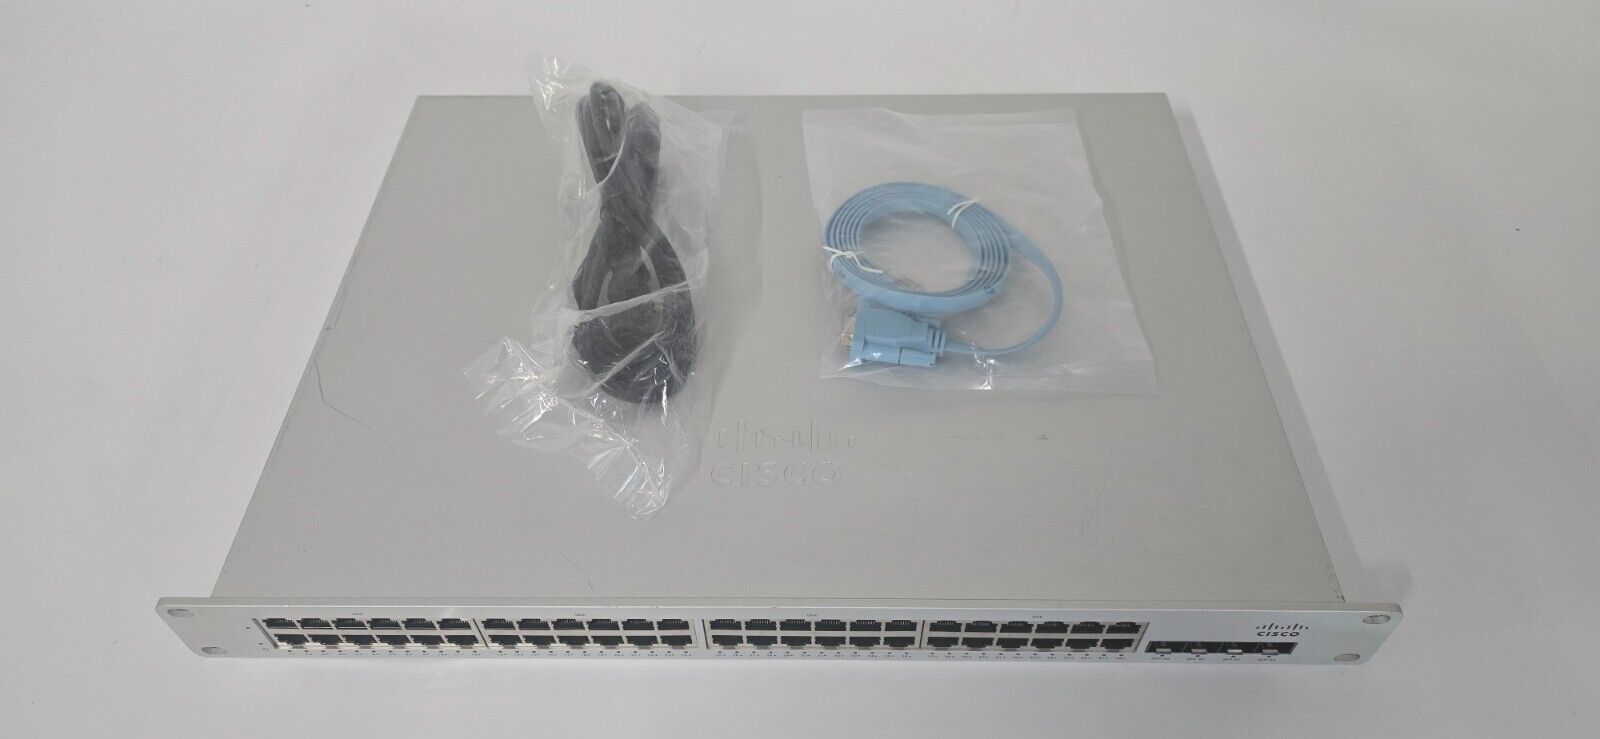 Cisco Meraki MS210-48-HW 48 Port Gigabit 4 SFP 1G Network Switch *UNCLAIMED*